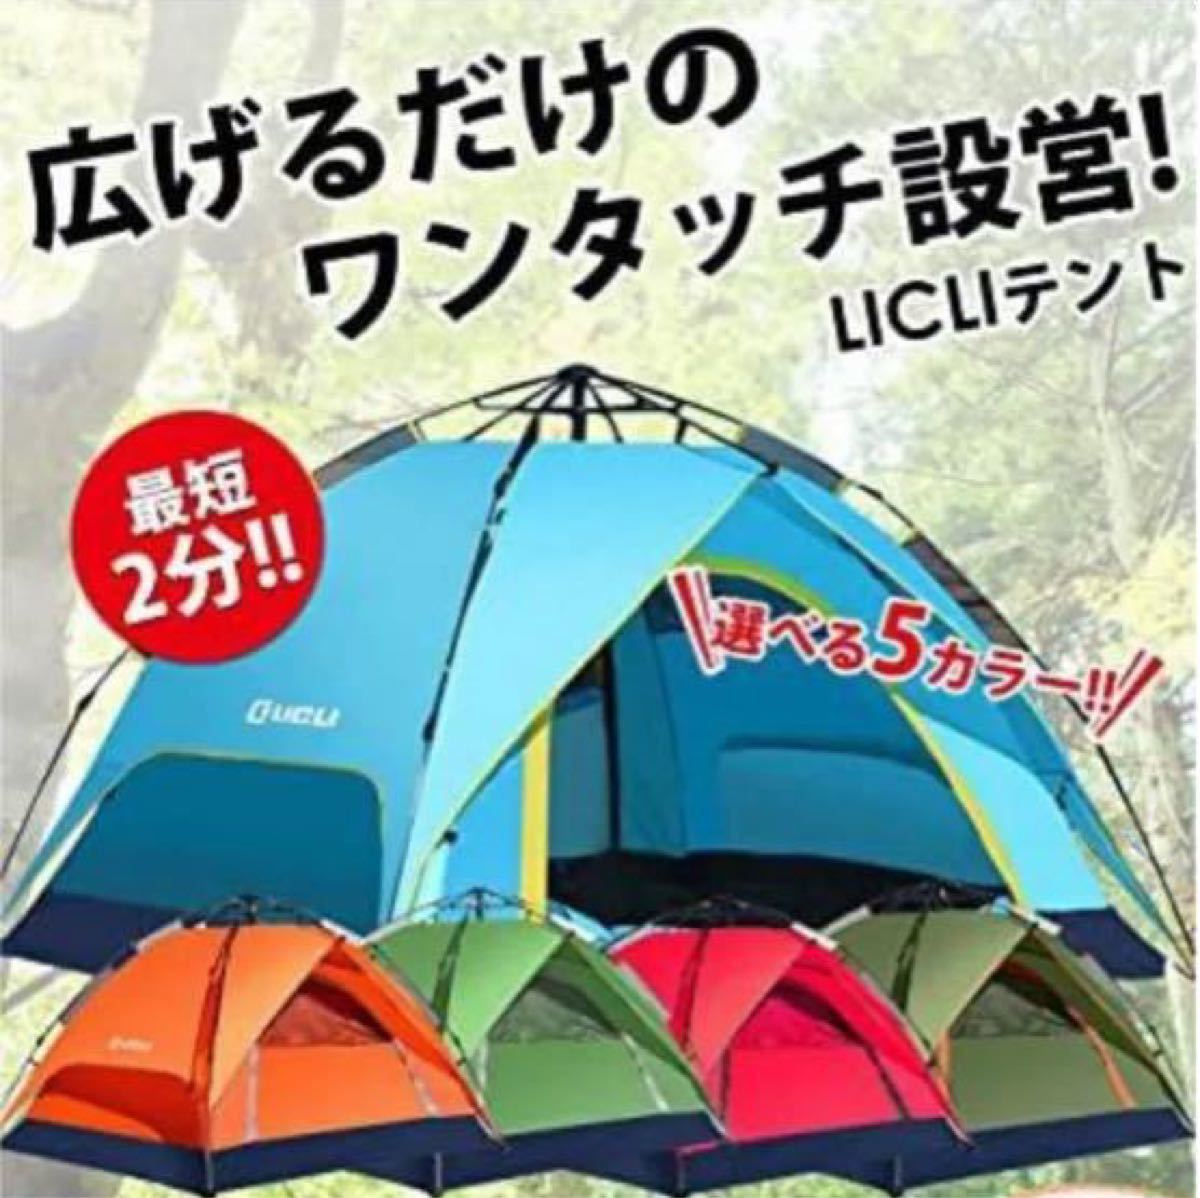 【組立簡単】ワンタッチ テント キャンプ 2人用 4人用 初心者 UVカット アウトドア ブルー ワンタッチテント 四季